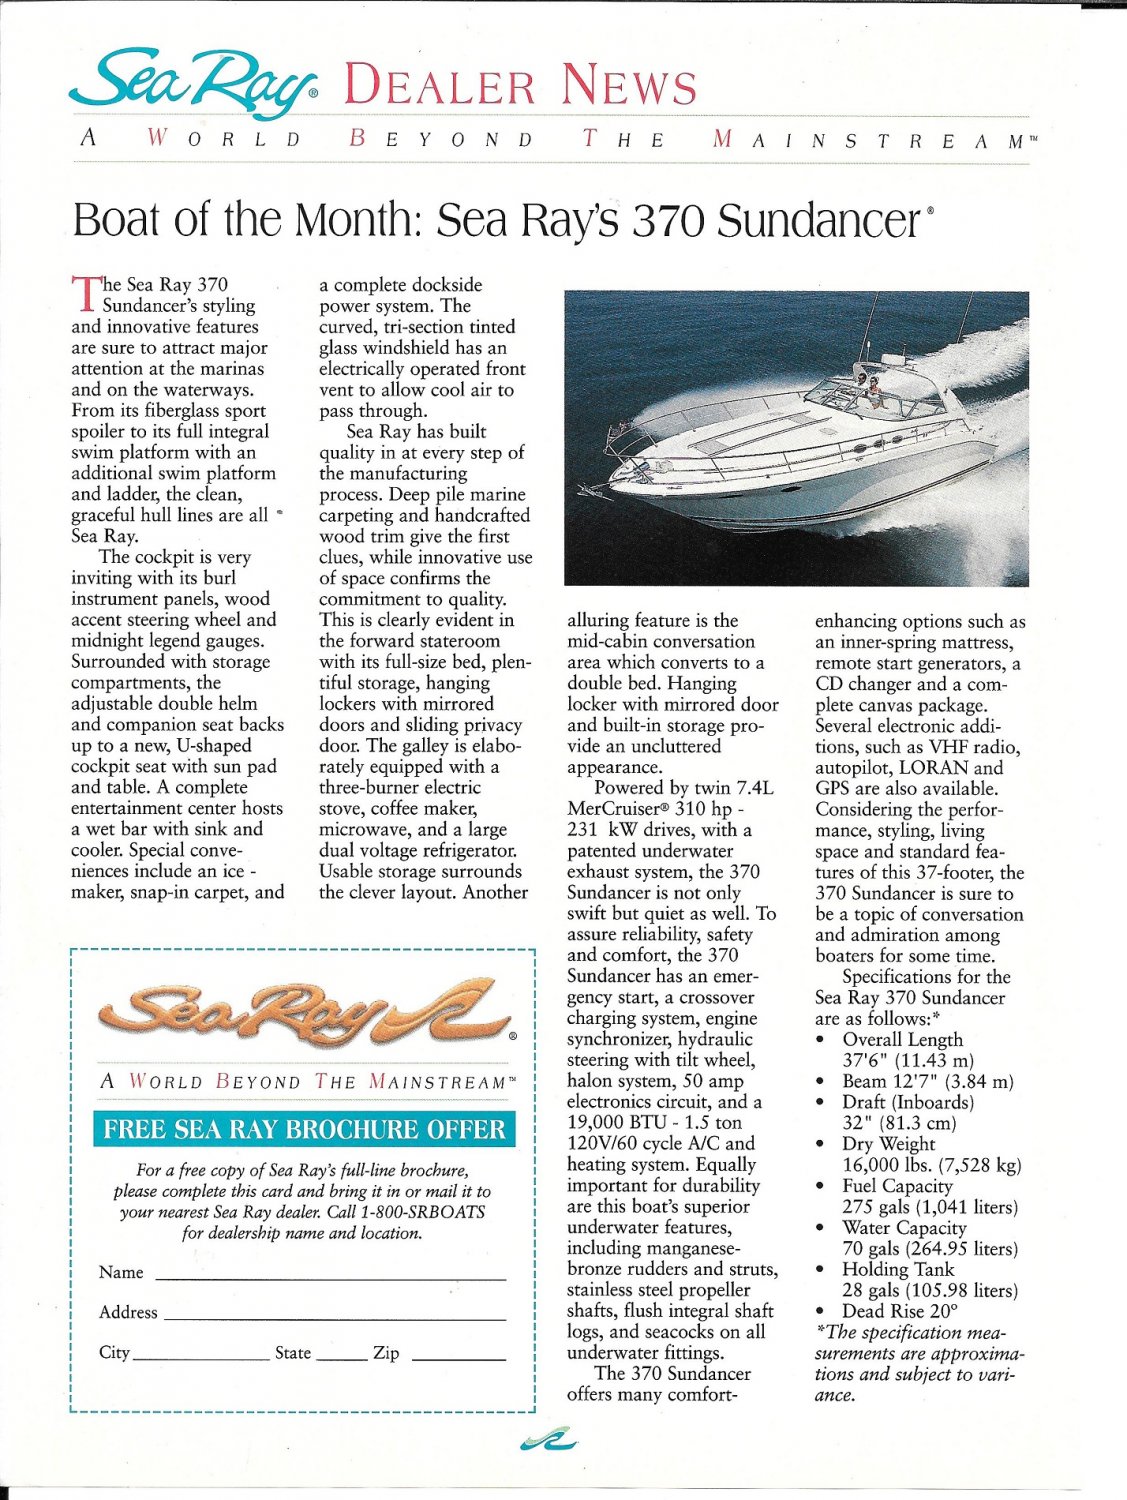 1996 Sea Ray 370 Sundancer Boat Review- Boat Specs & Photo